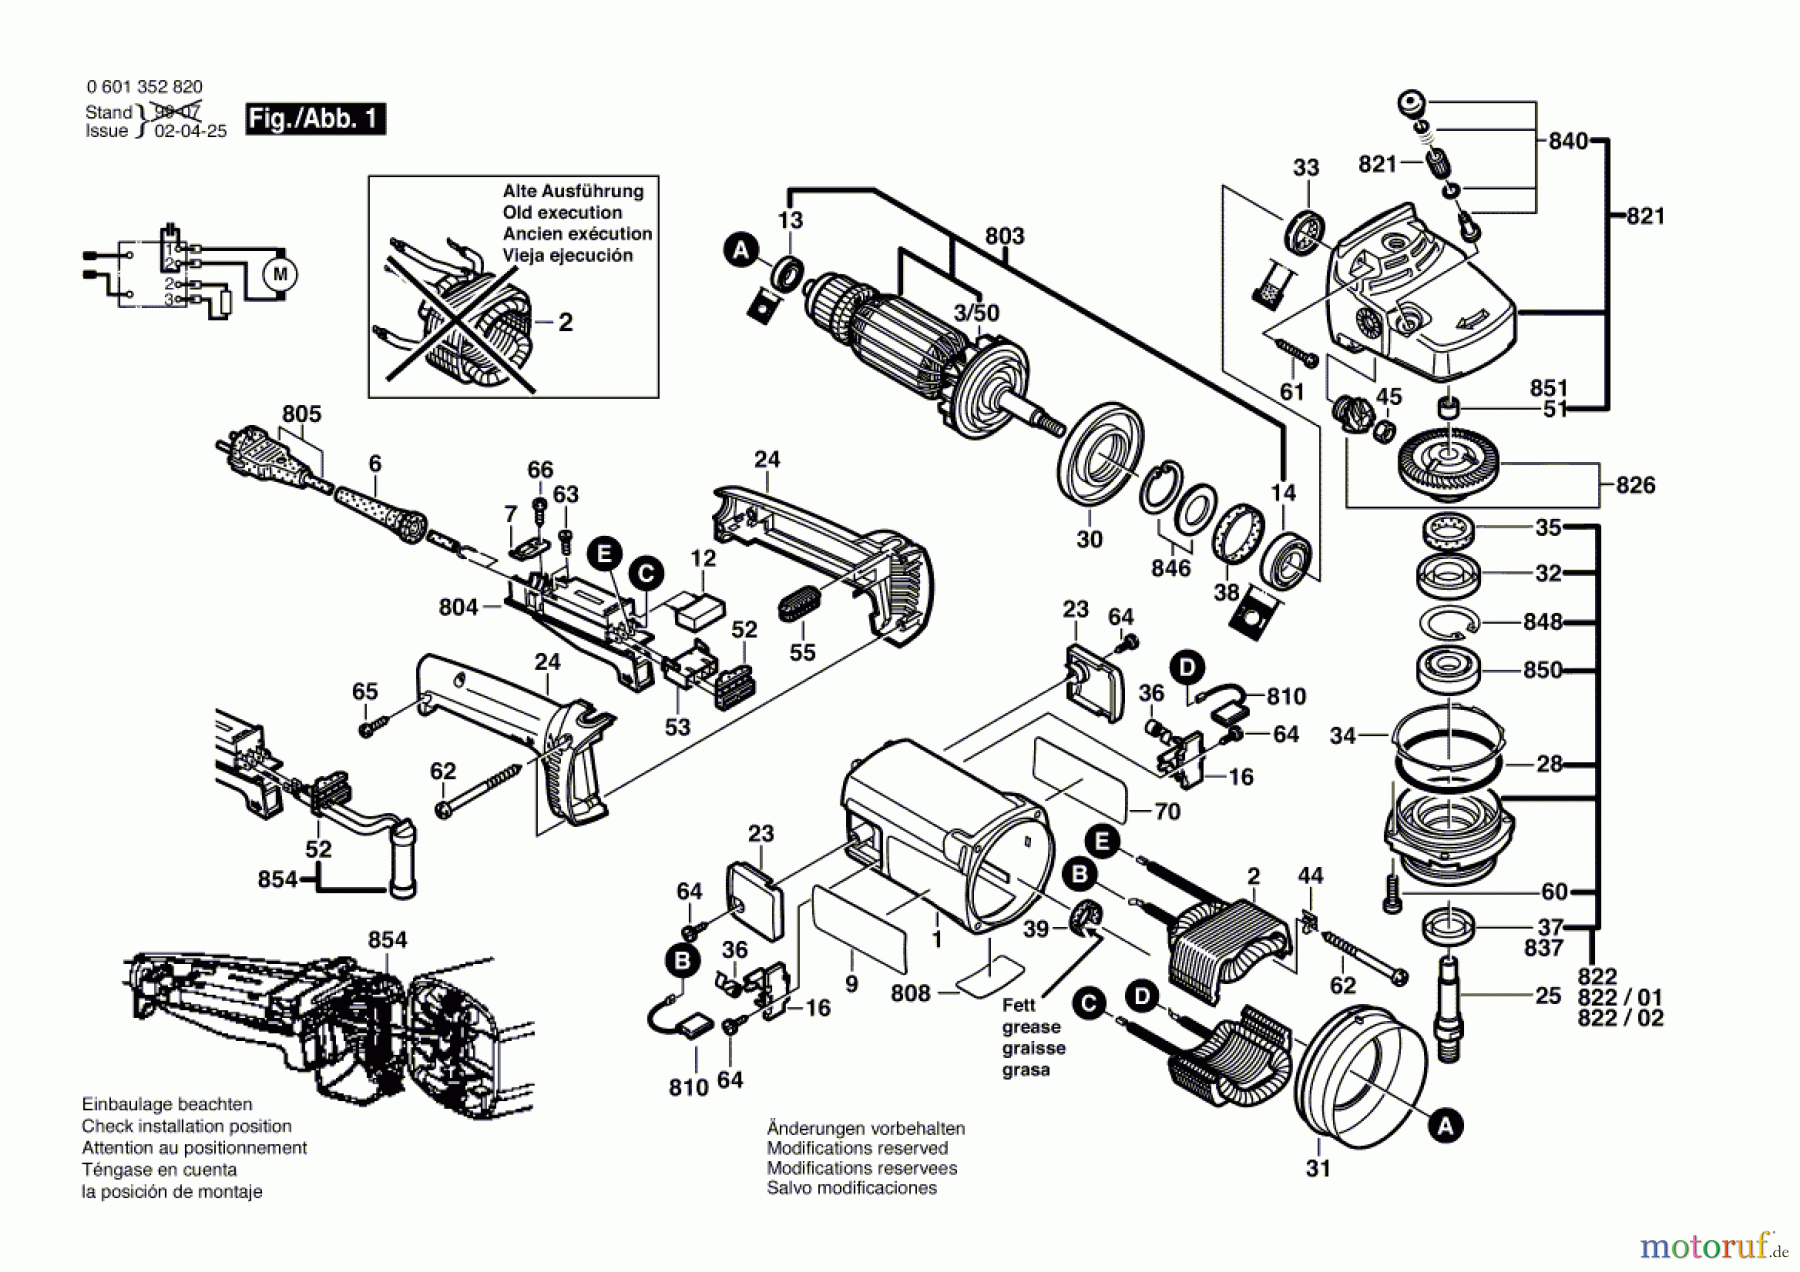  Bosch Werkzeug Winkelschleifer GWS 2000-230 J Seite 1